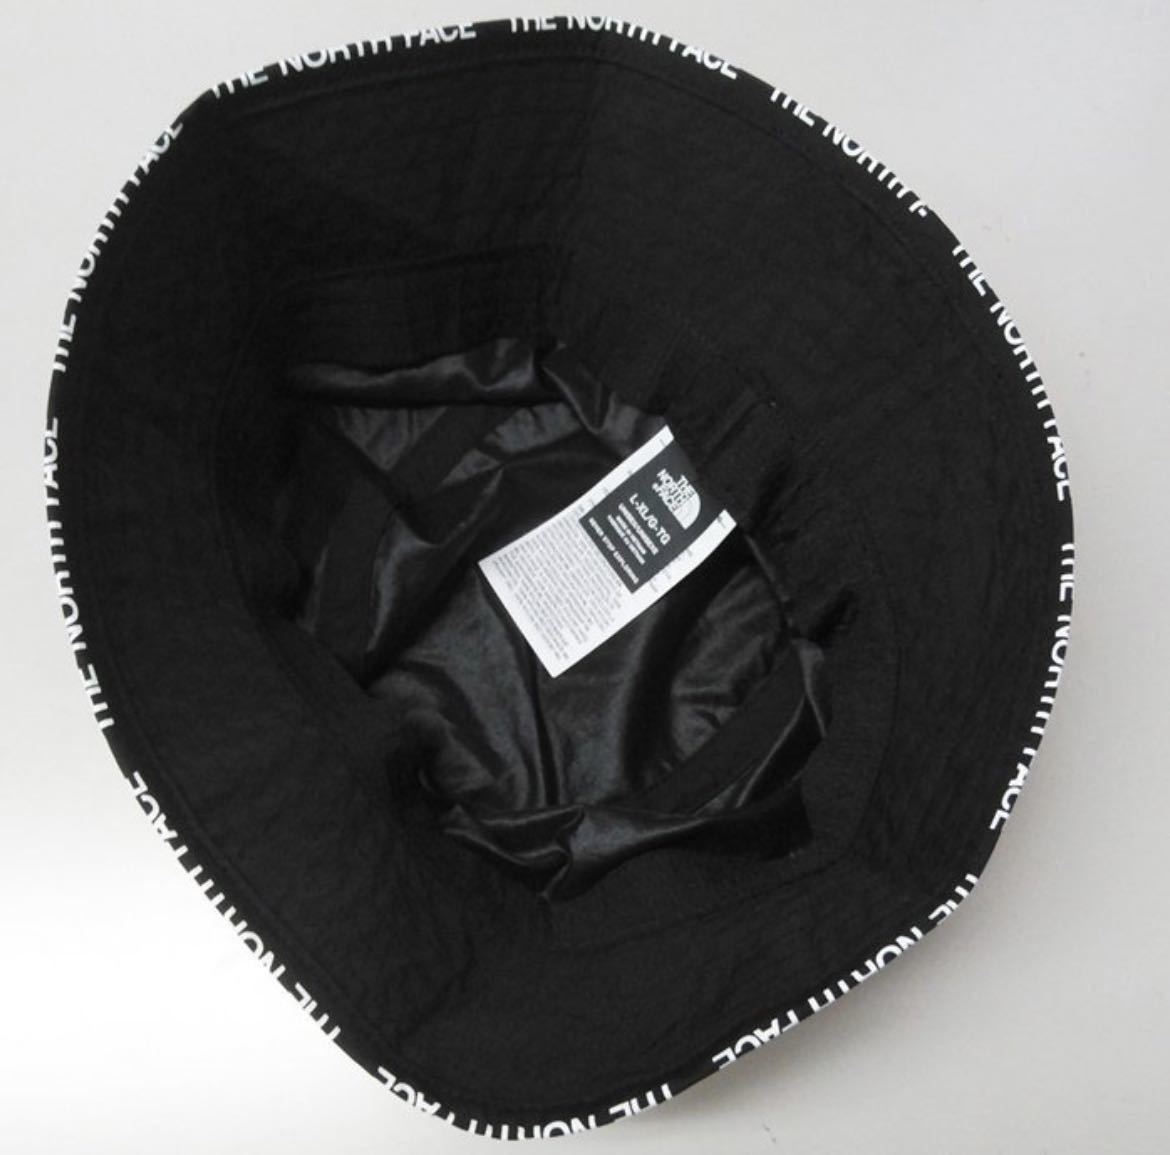 ノースフェイス バケットハット 帽子 メンズ レディーブラック ブラック L XL キャップ 日本未発売 海外限定 THE NORTH FACE ブラック 黒